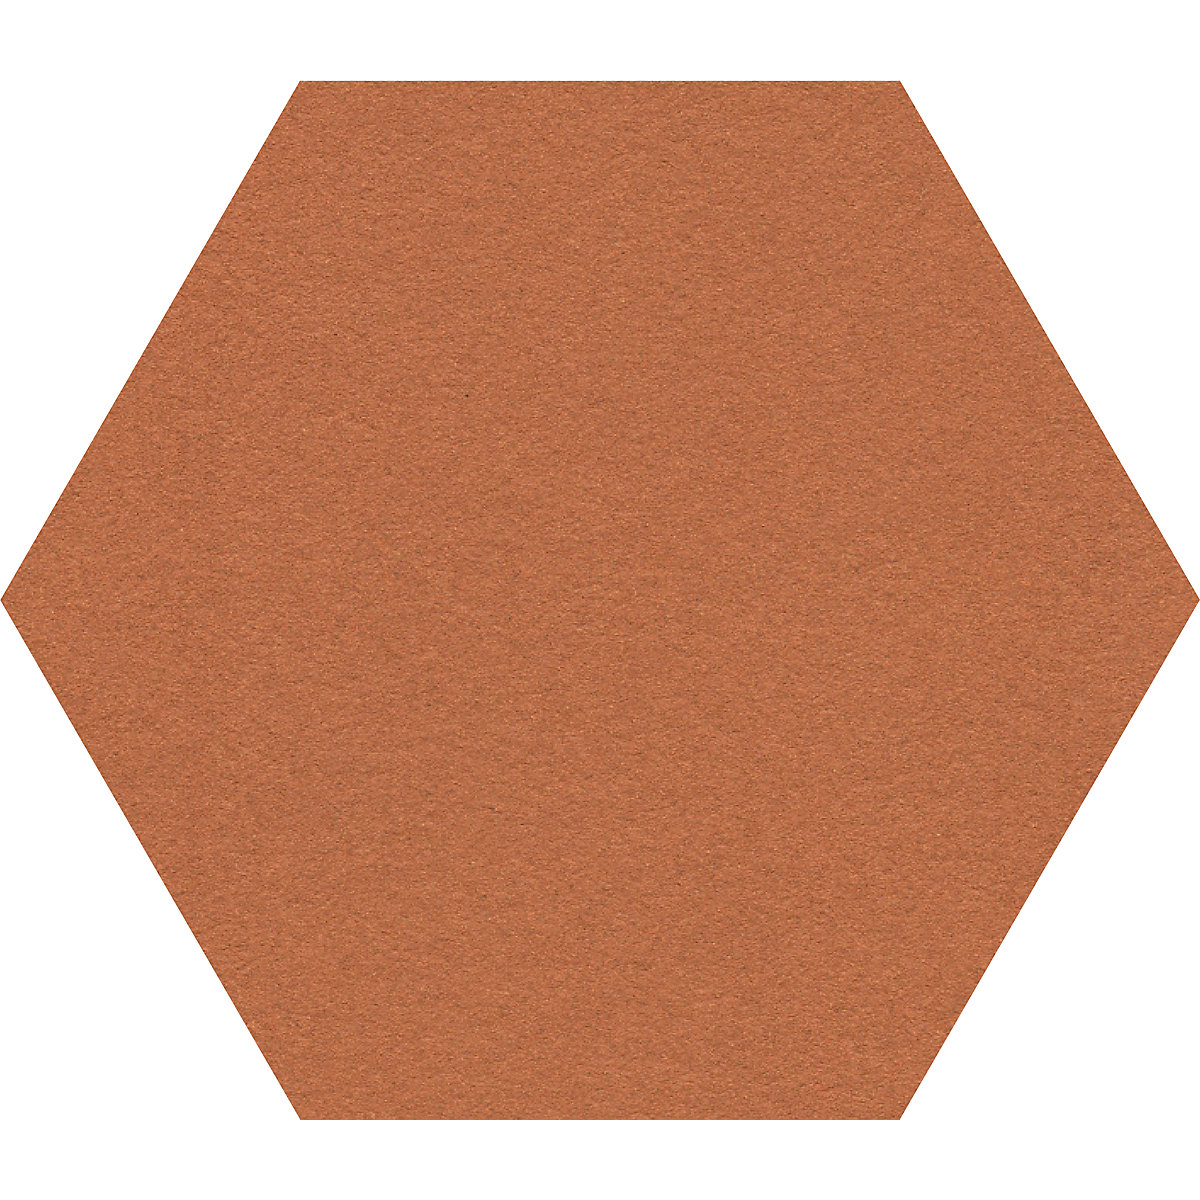 Design prikbord zeshoekig – Chameleon, kurk, b x h = 600 x 600 mm, cognac-33